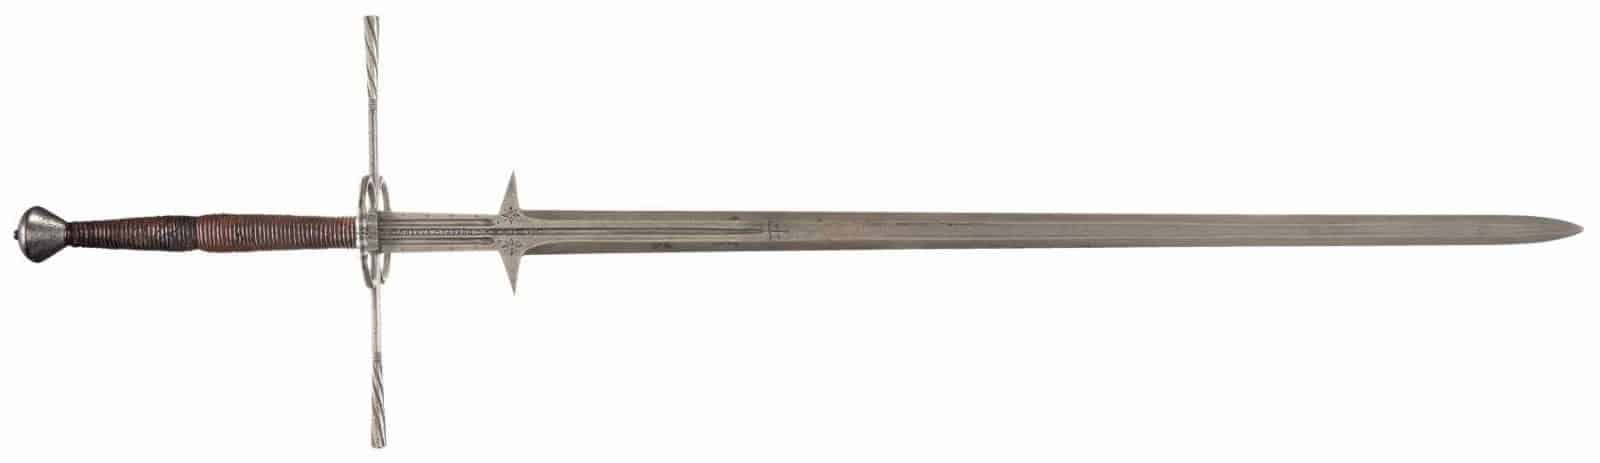 museum-antique-german-federschwert-longsword-fencing-swords-1600x463